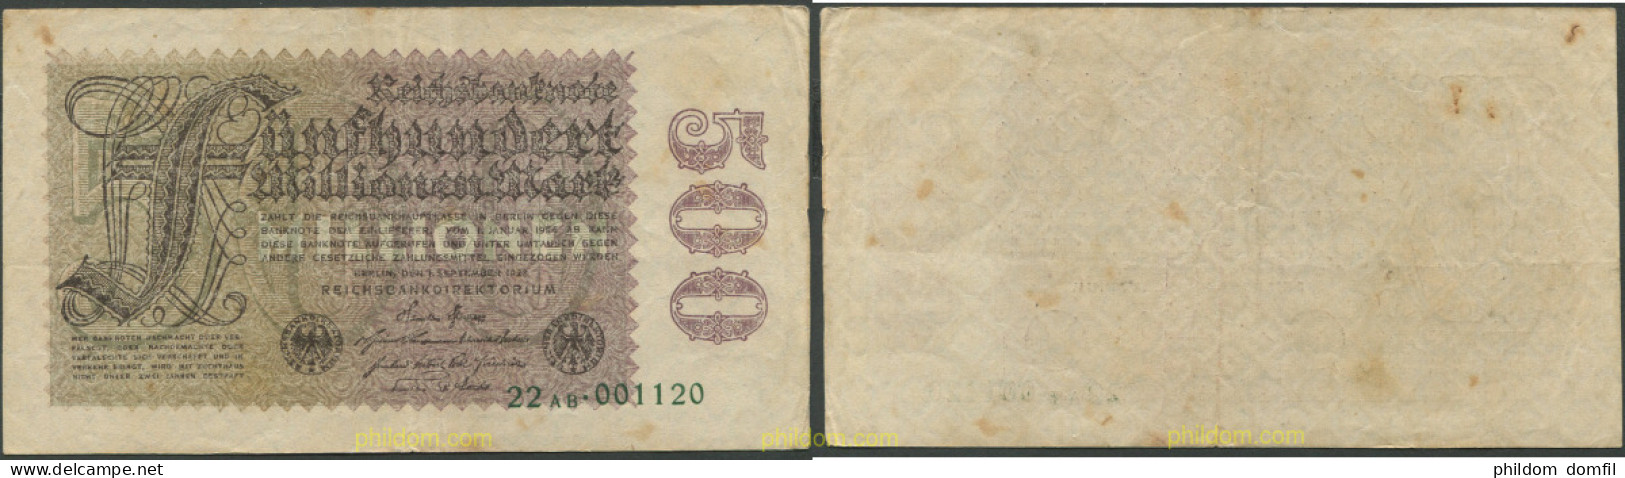 1474 ALEMANIA 1923 GERMANY 5 MILLIARDE MARK 1923 - Reichsschuldenverwaltung